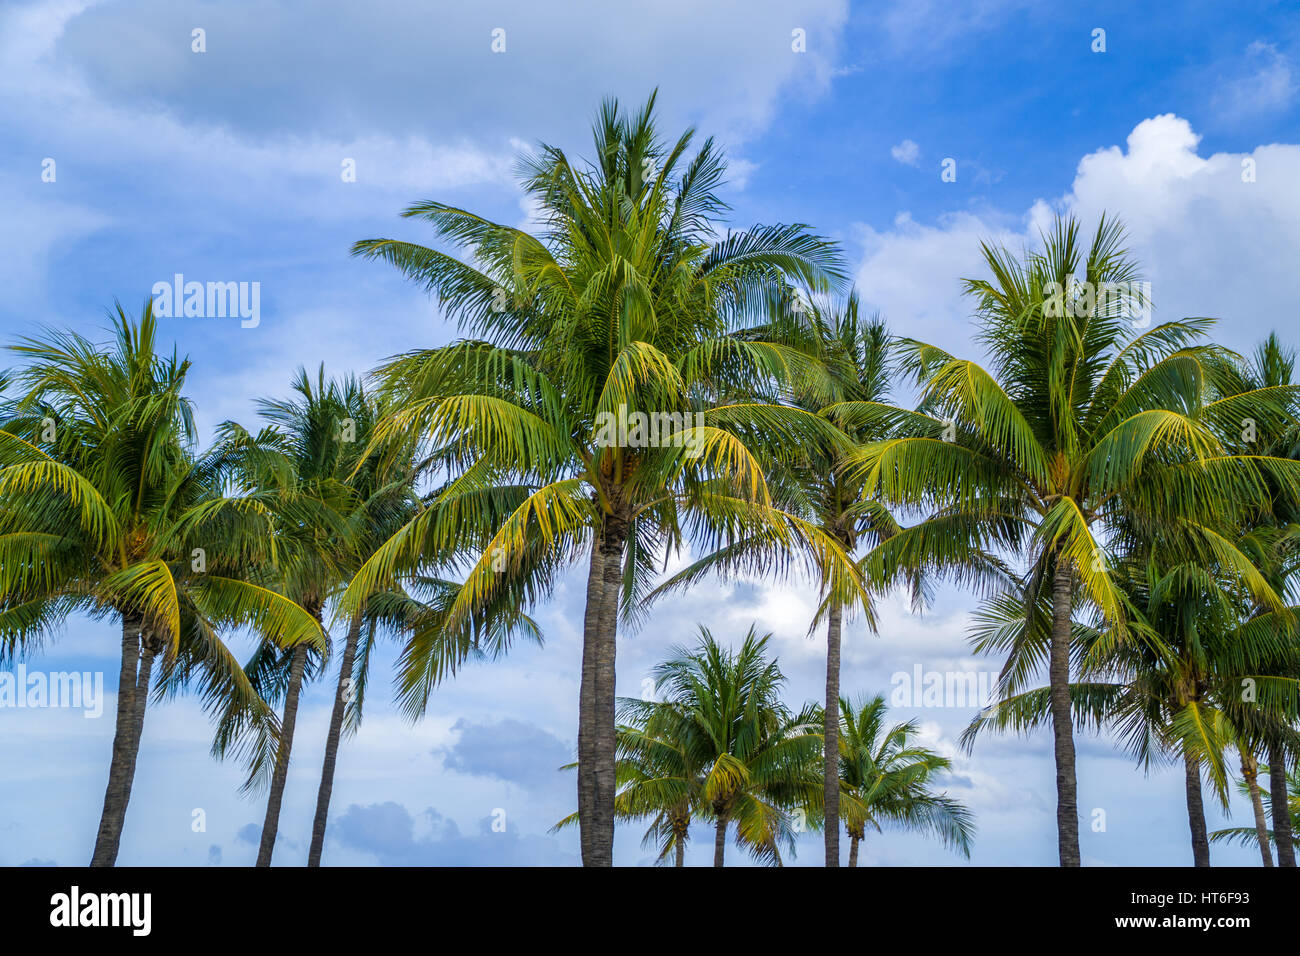 Majestätische Palmen säumen die Strandpromenade von Miami Beach, Florida am Ocean Drive in South Beach Gegend in der Nähe von Te Art Deco-Viertel. Stockfoto